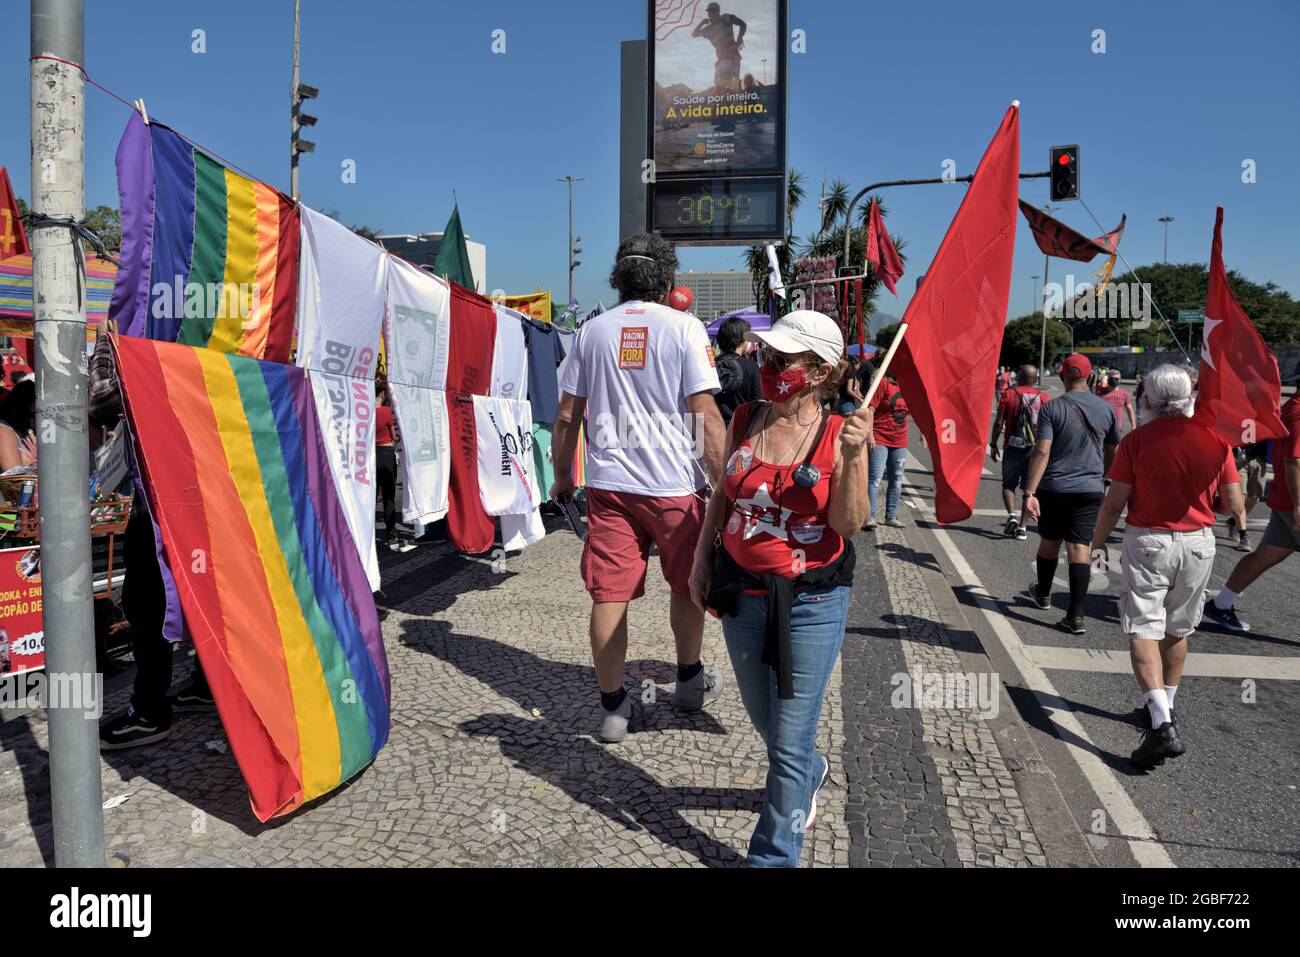 Brasile – 24 luglio 2021: I marchers si sono arrabbiati per l'amministrazione del presidente brasiliano Jair Bolsonaro si sono riuniti a Rio de Janeiro per dire loro di volerlo fuori Foto Stock